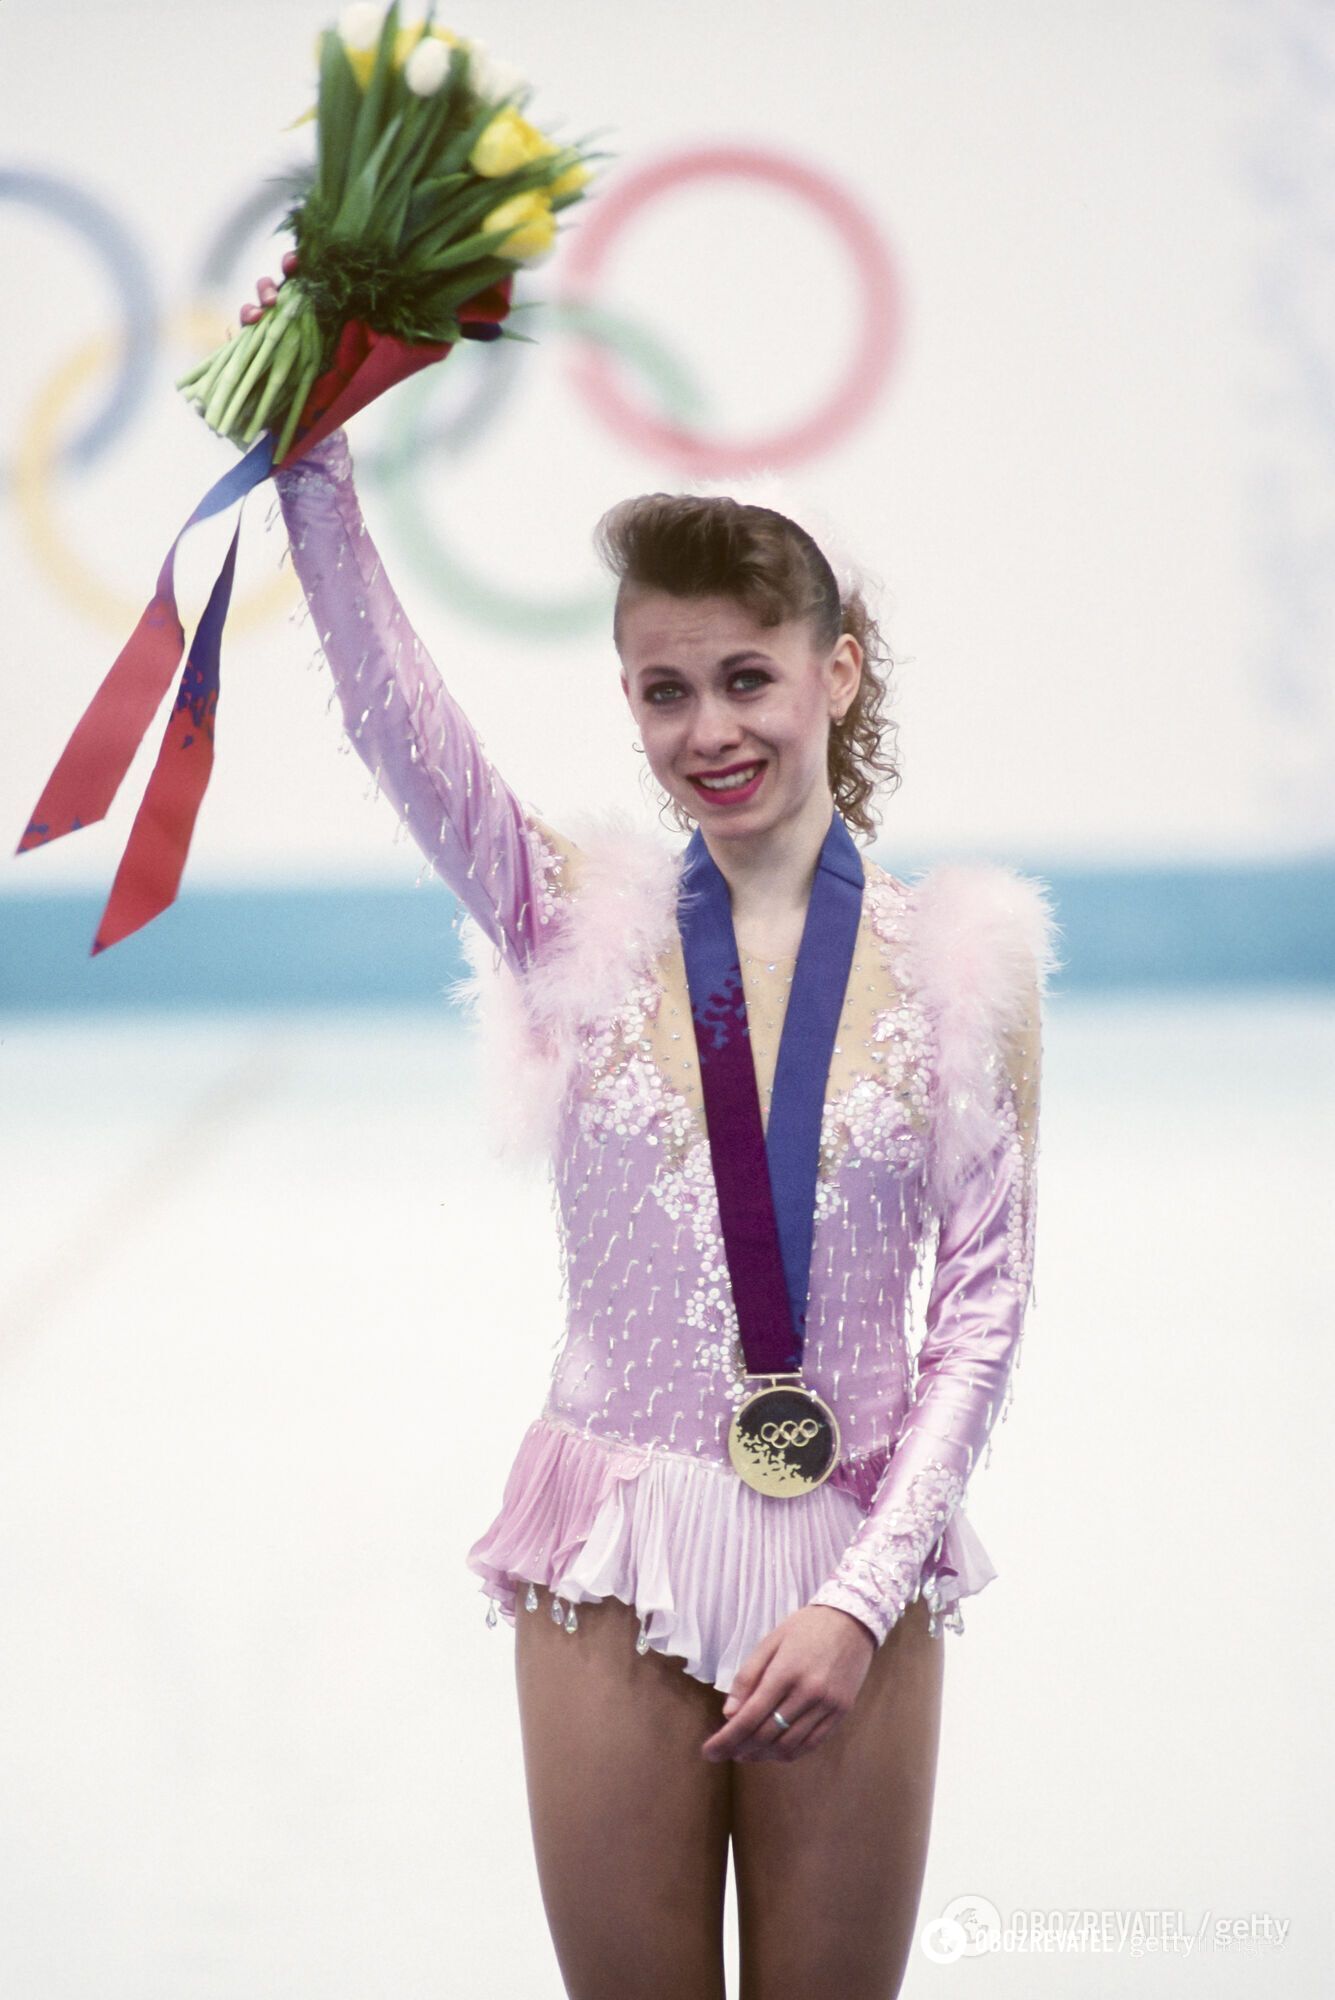 Оксана Баюл в золотой медалью